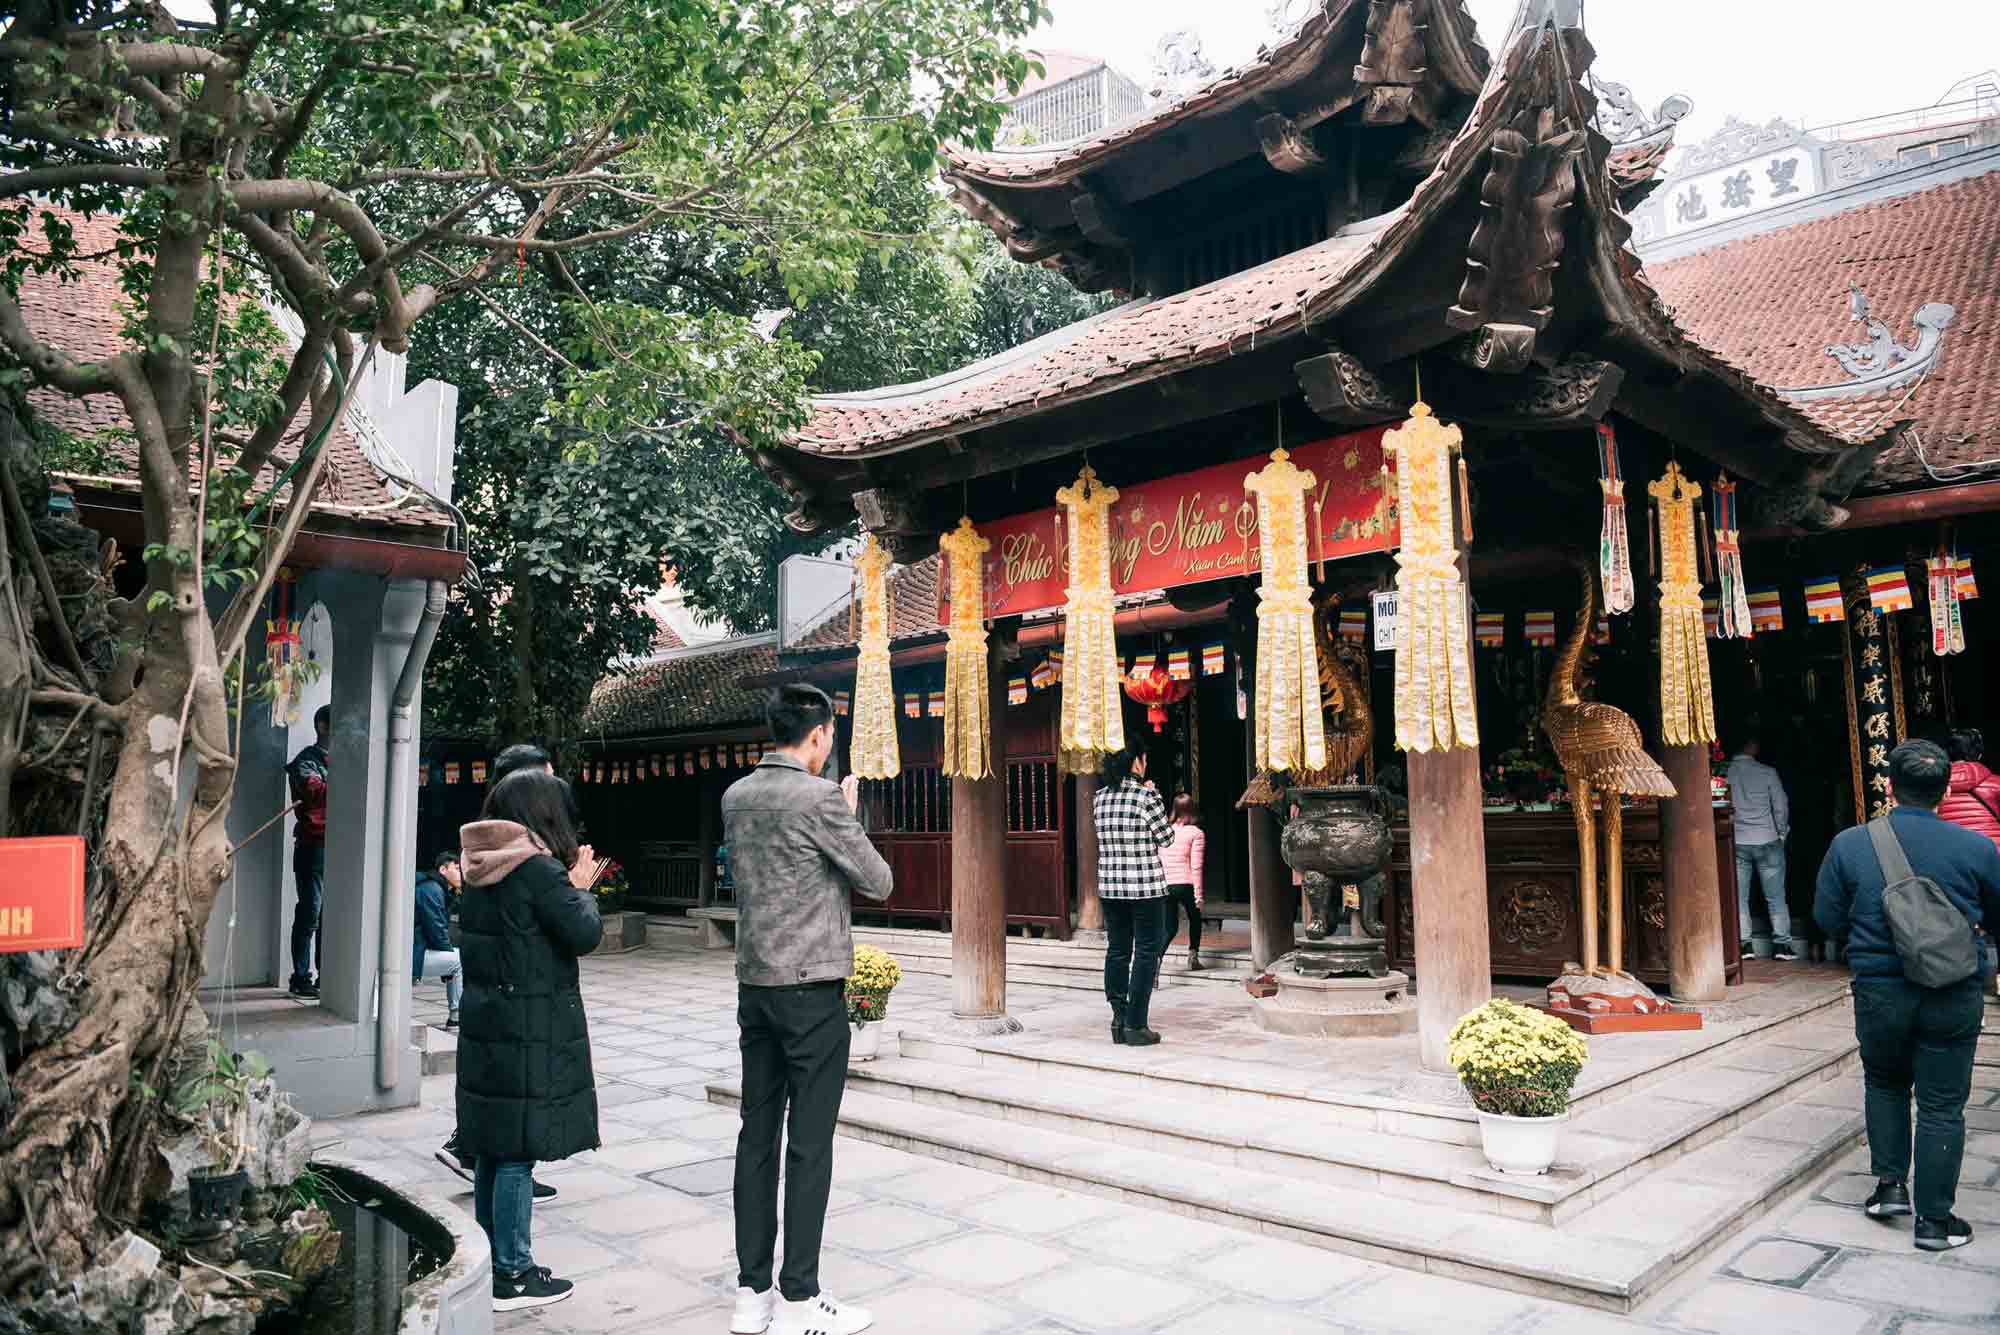 Giới thiệu về chùa Hà - một địa điểm tâm linh